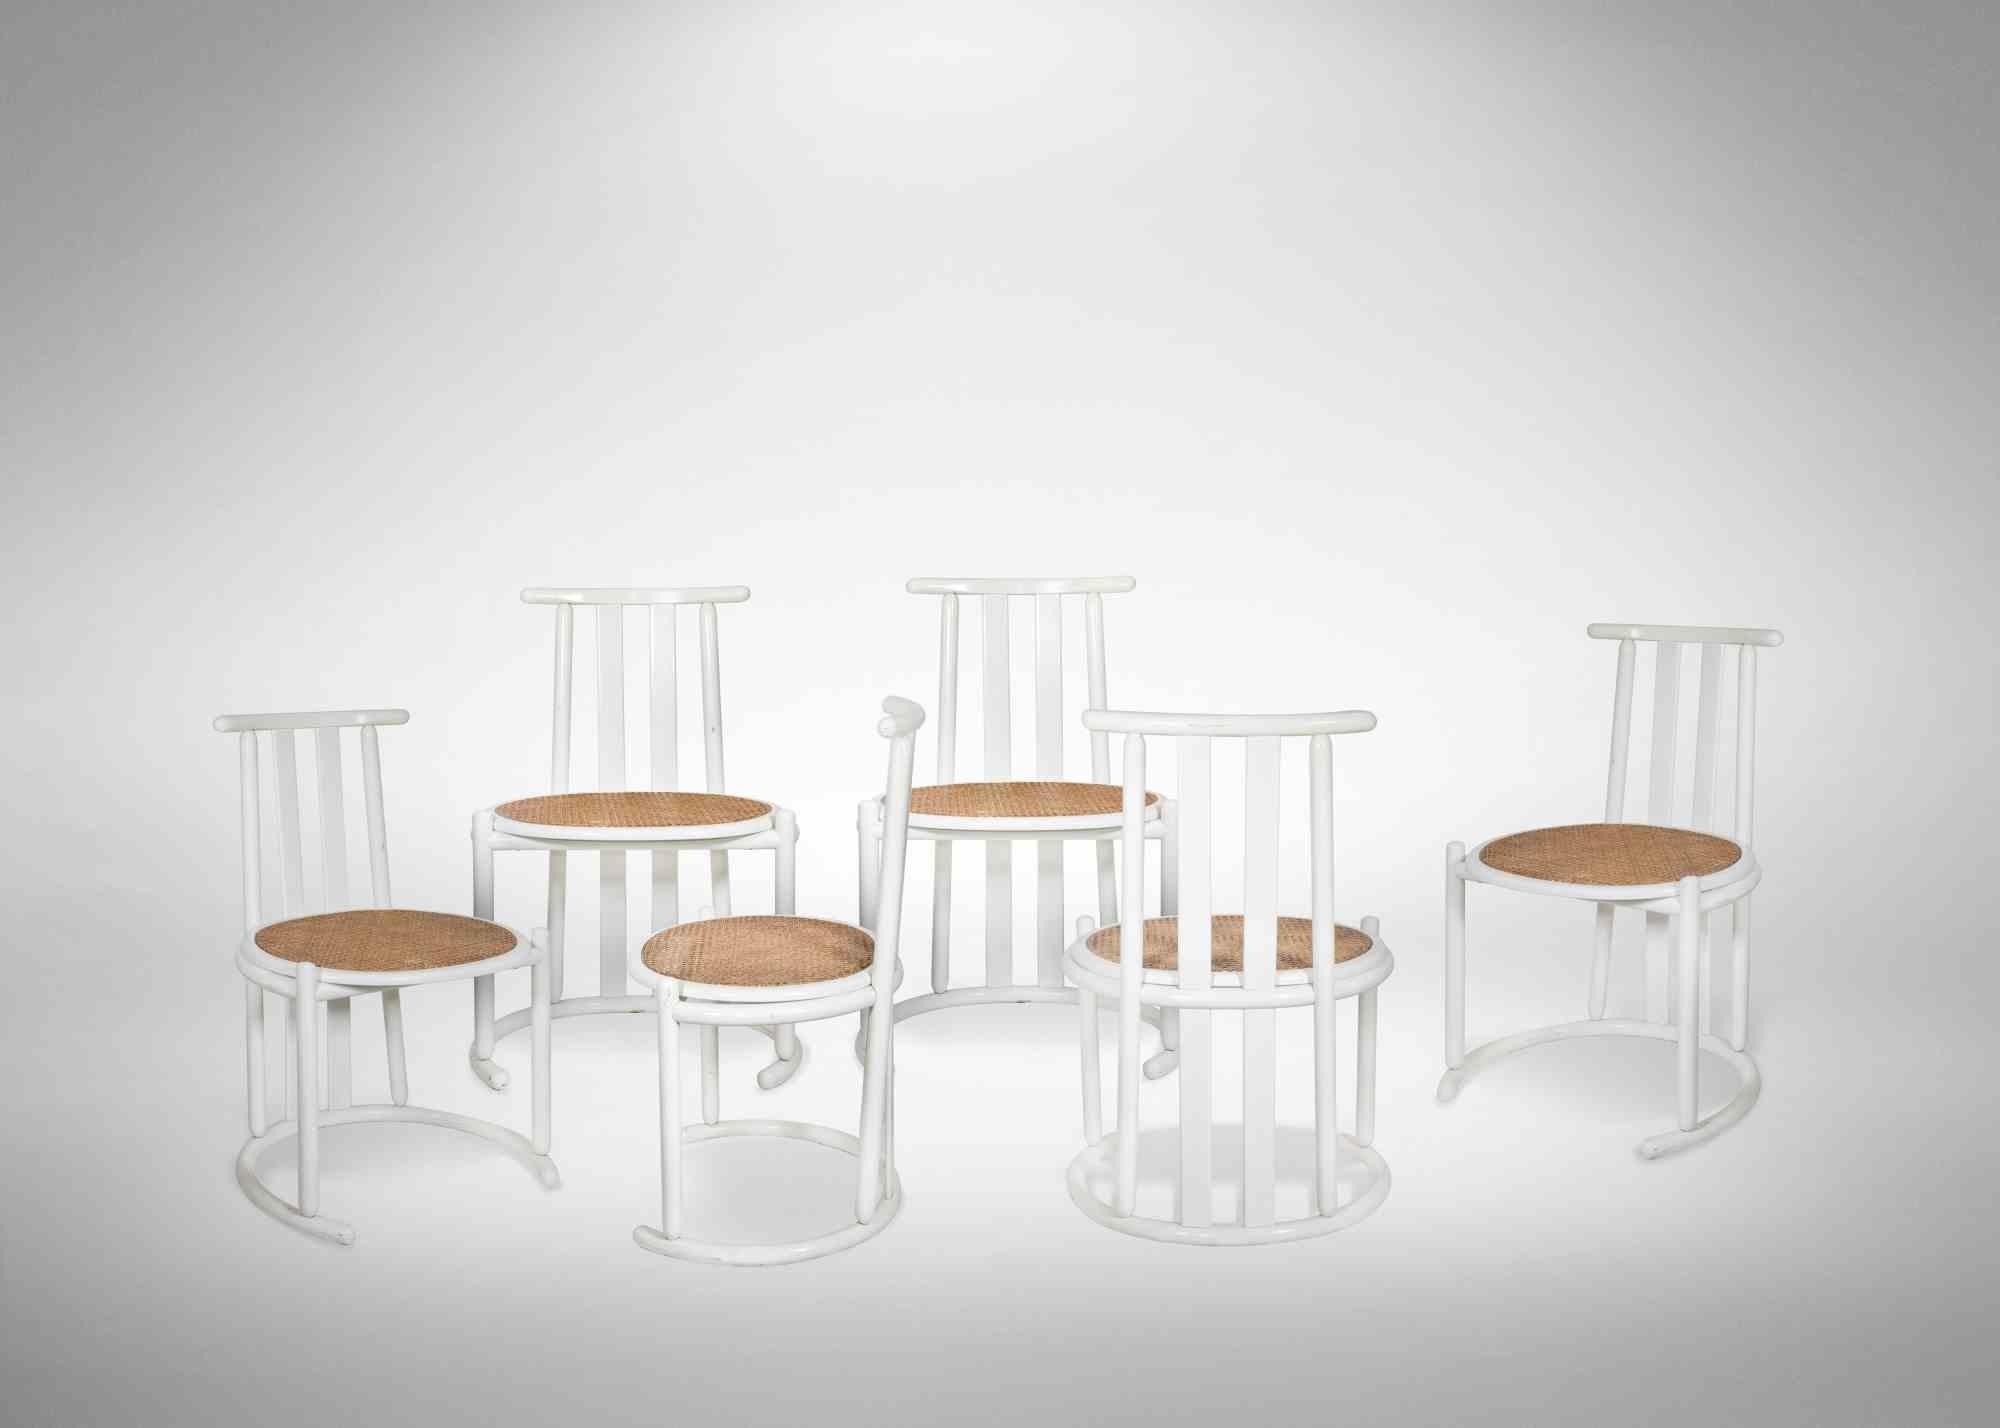 Ensemble de six chaises de style Baumann, 1970. 

Bois laqué.

Hauteur  82 cm, longueur 59 cm, profondeur 48 cm.  

Bonnes conditions.